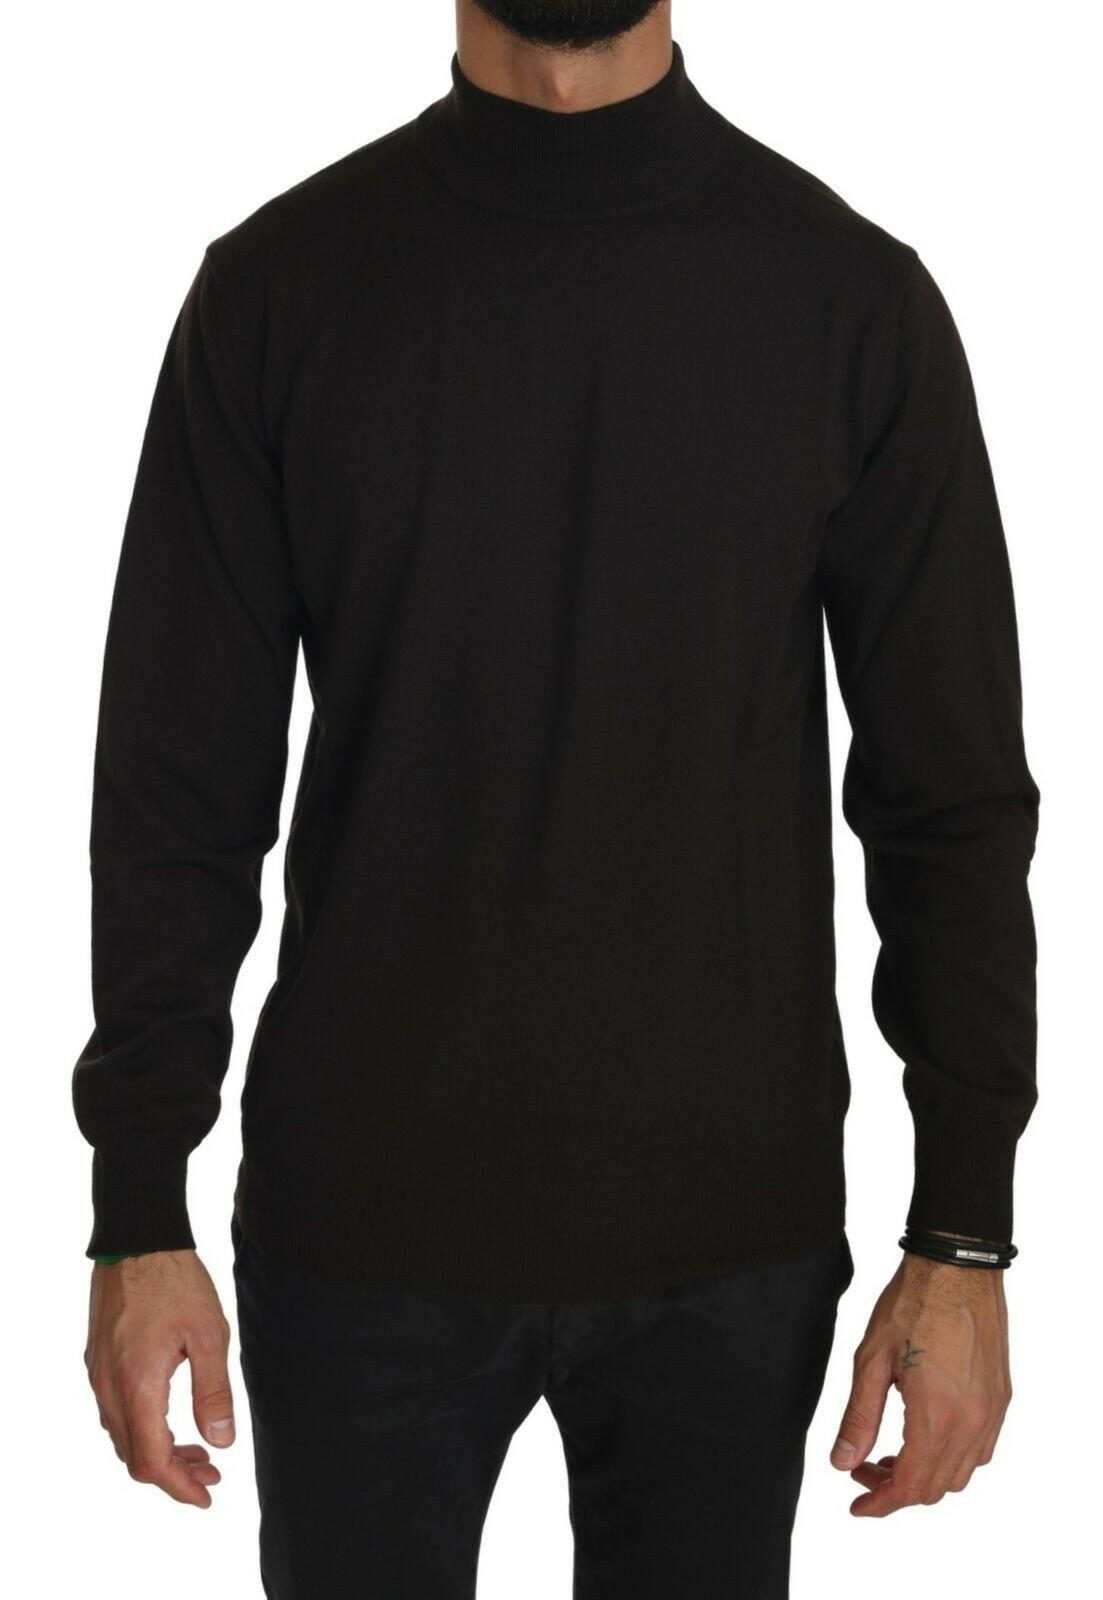 MILA SCHÖN Brown Turtle Neck Pullover Wool Sweater - GENUINE AUTHENTIC BRAND LLC  